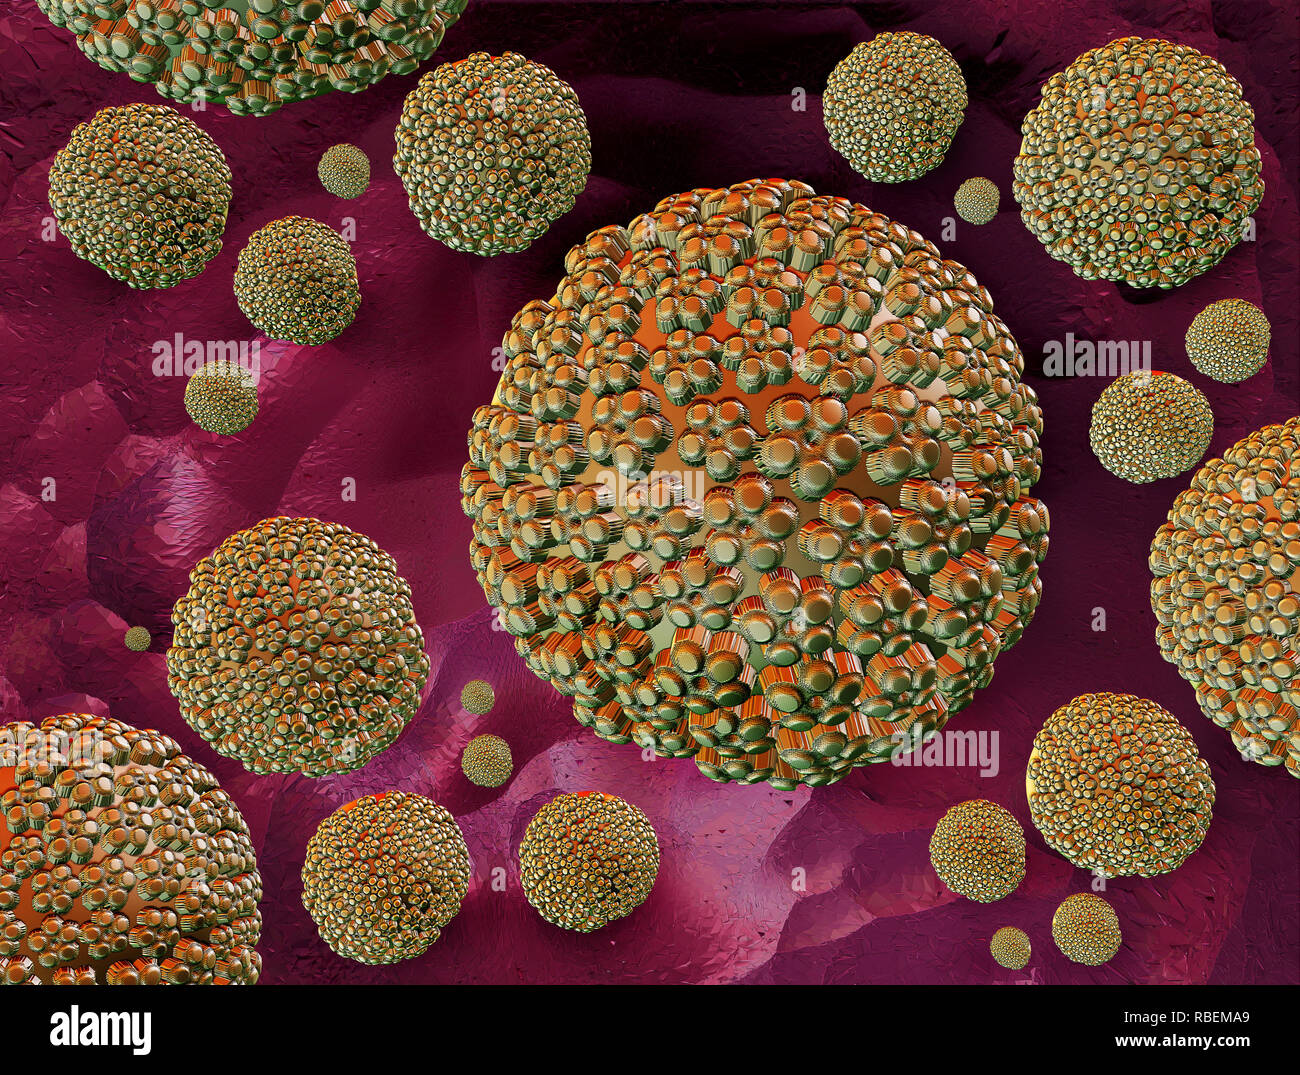 Illustrations Human papillomaviruses Stock Photo